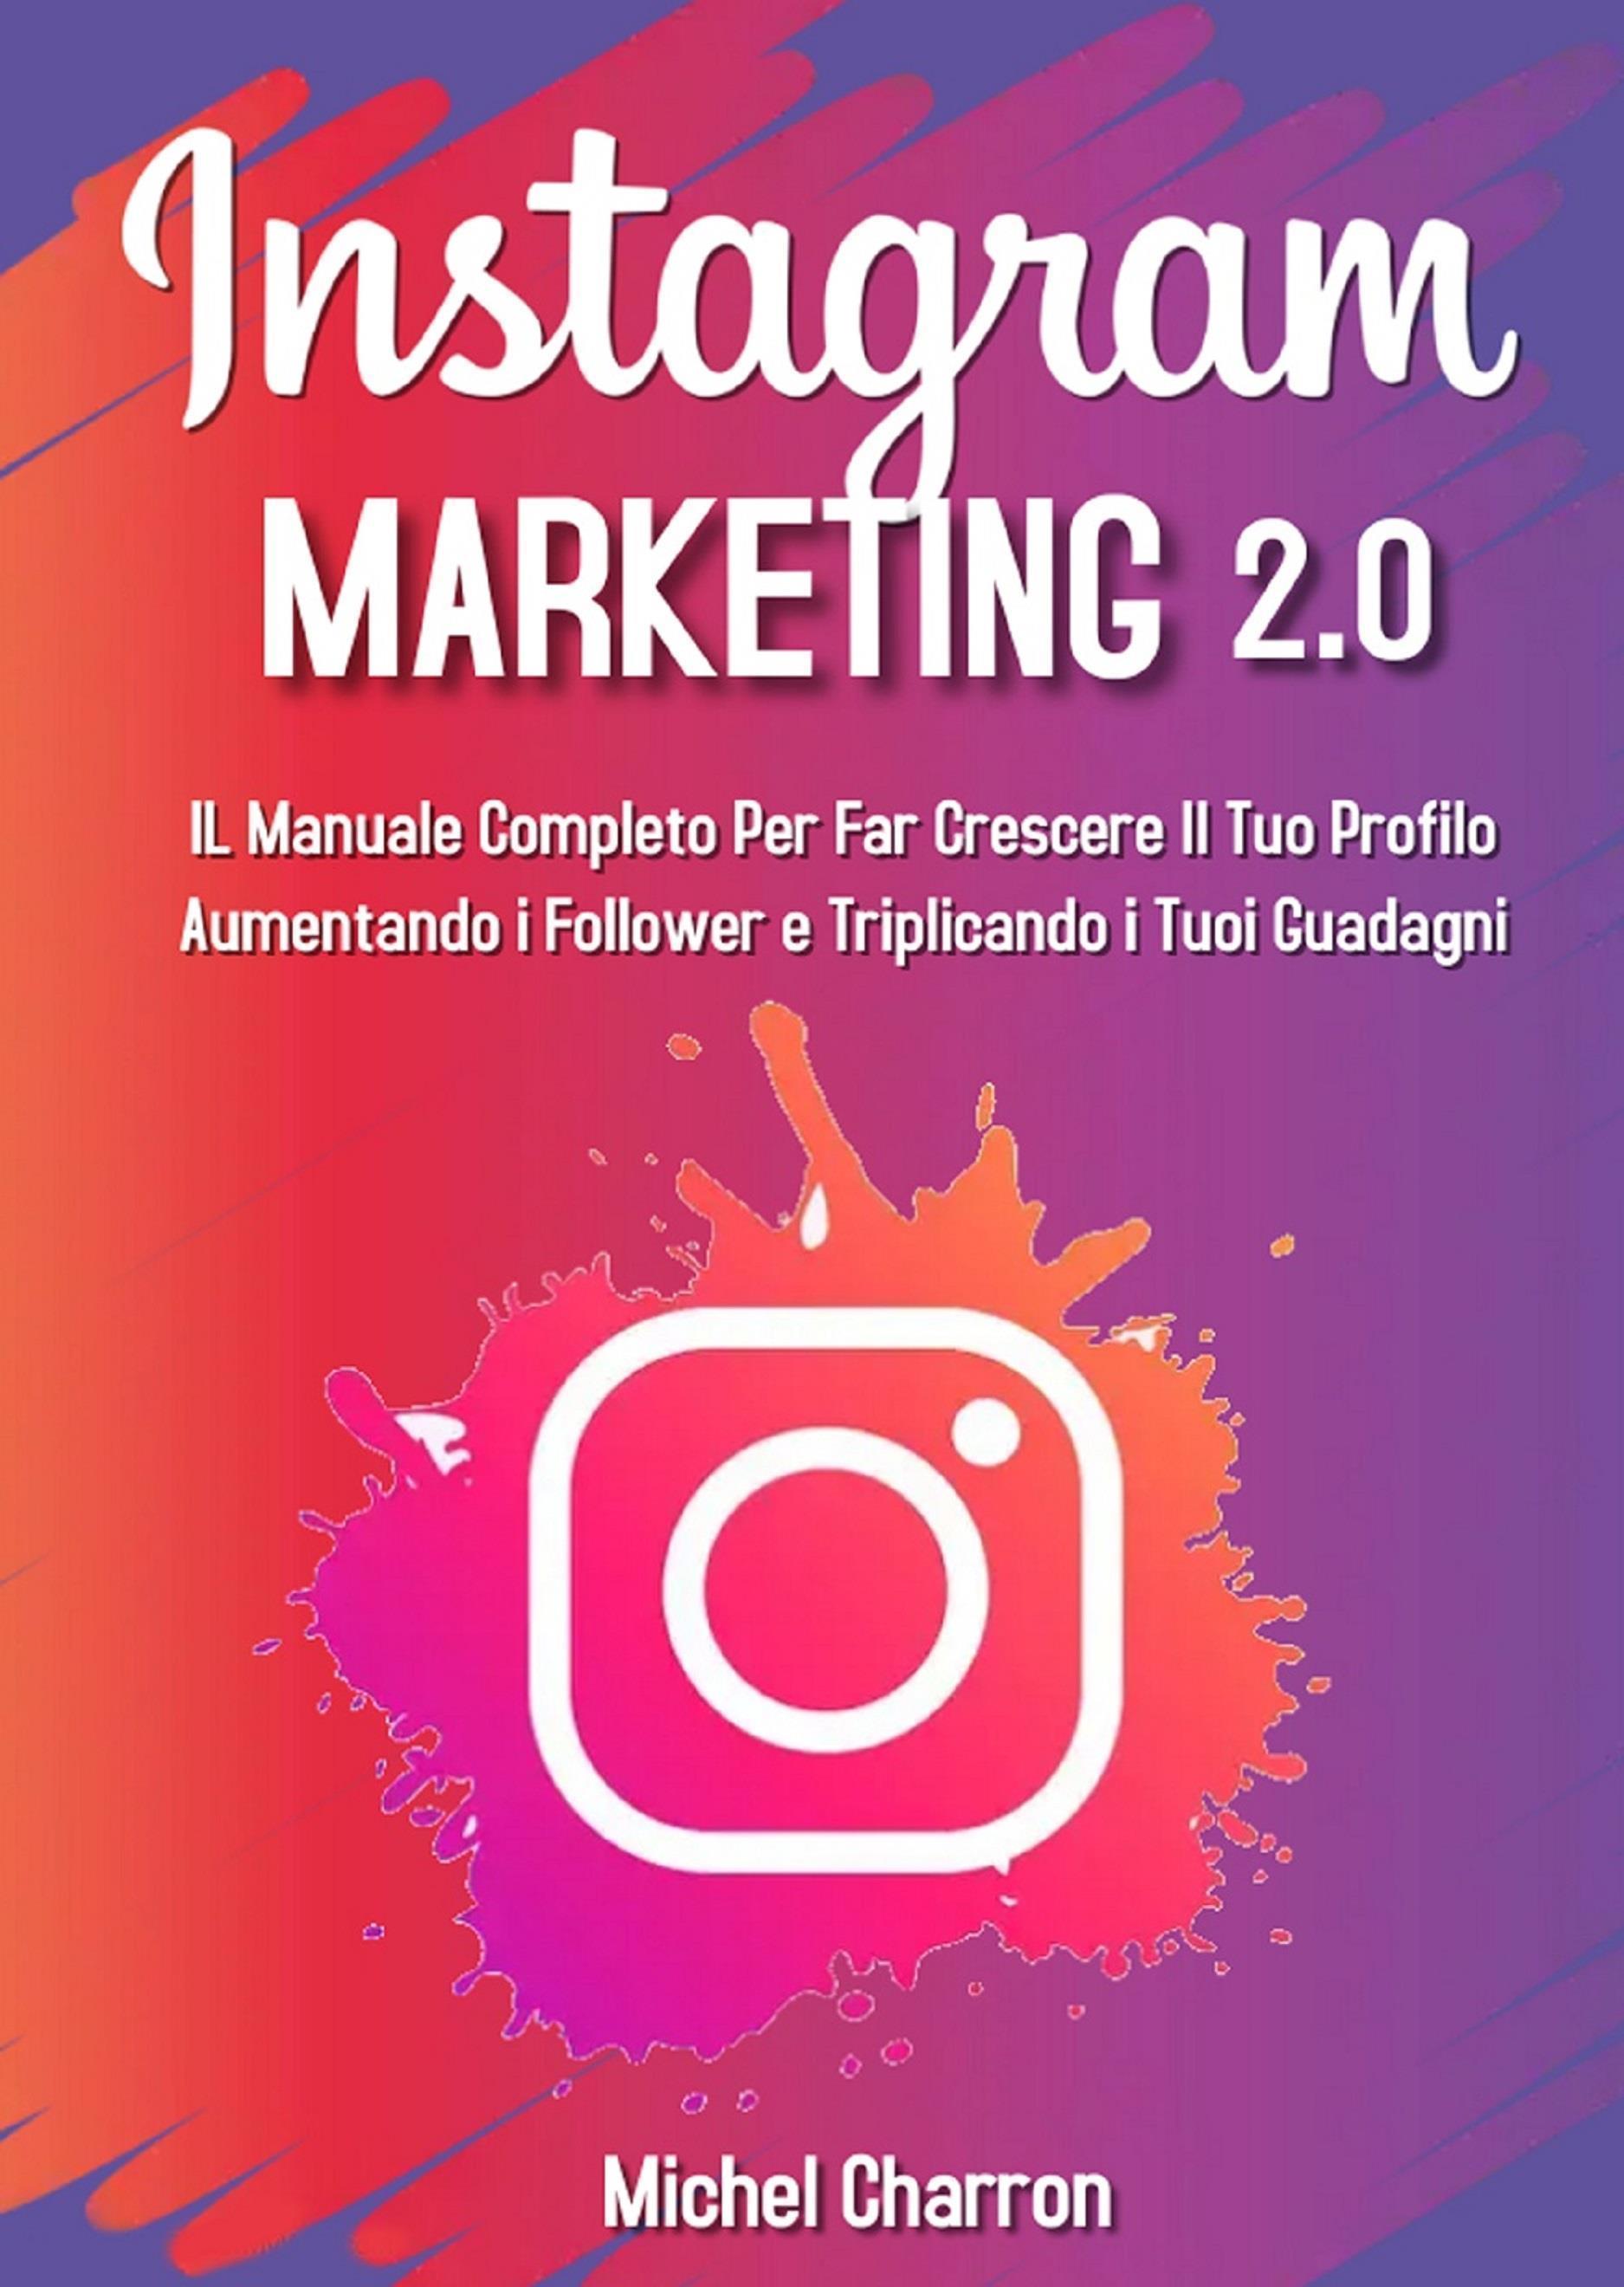 Instagram Marketing 2.0: Il Manuale Completo Per Far Crescere Il Tuo Profilo Aumentando i Follower e Triplicando i Tuoi Guadagni